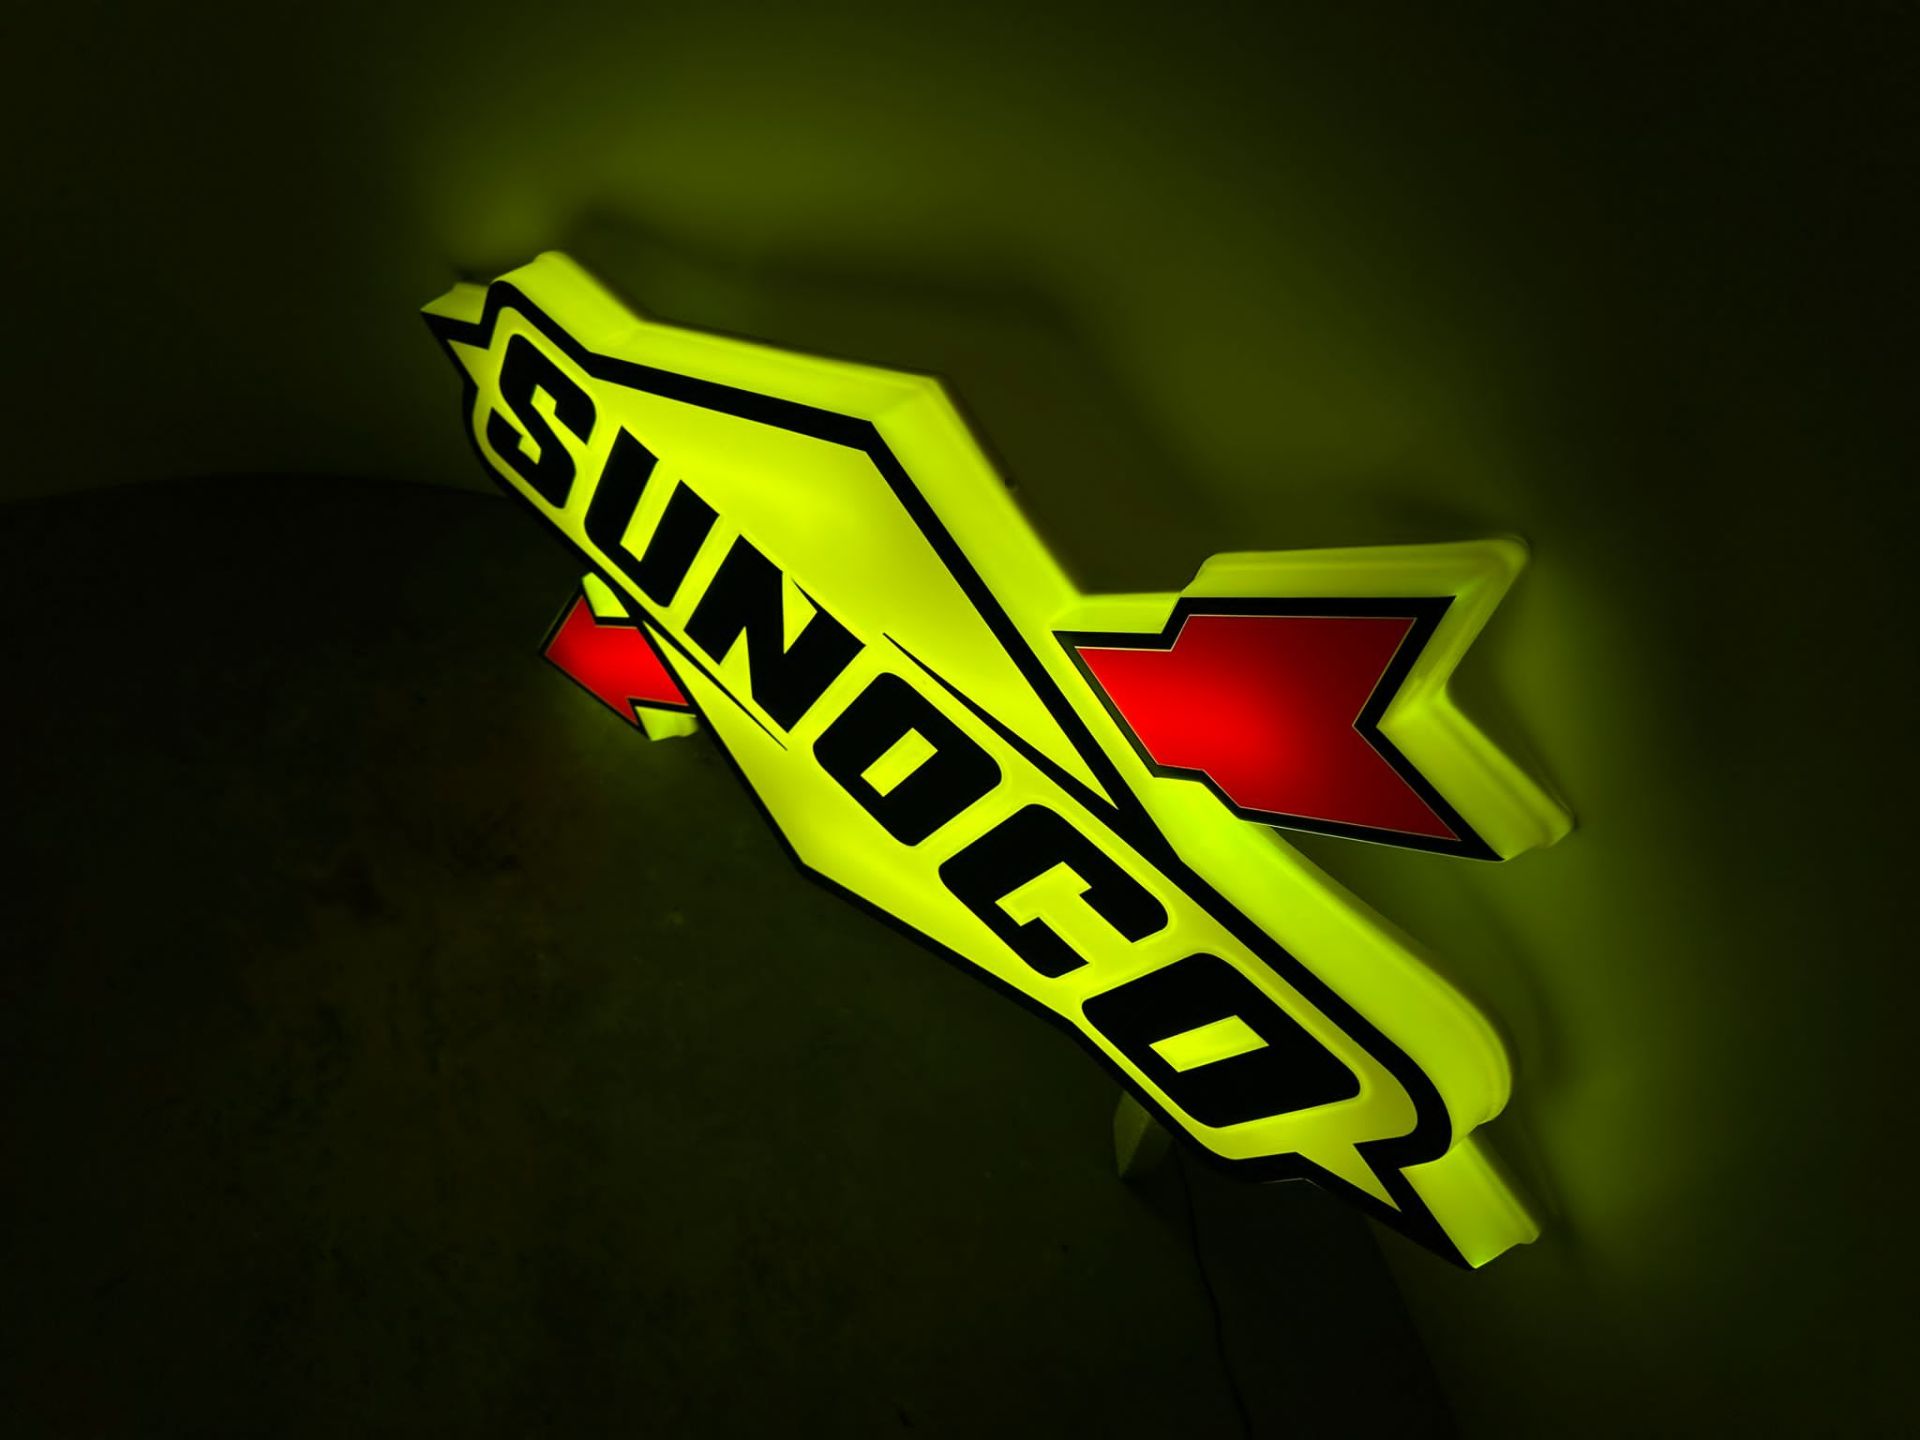 Sunoco illuminated sign - Image 4 of 6